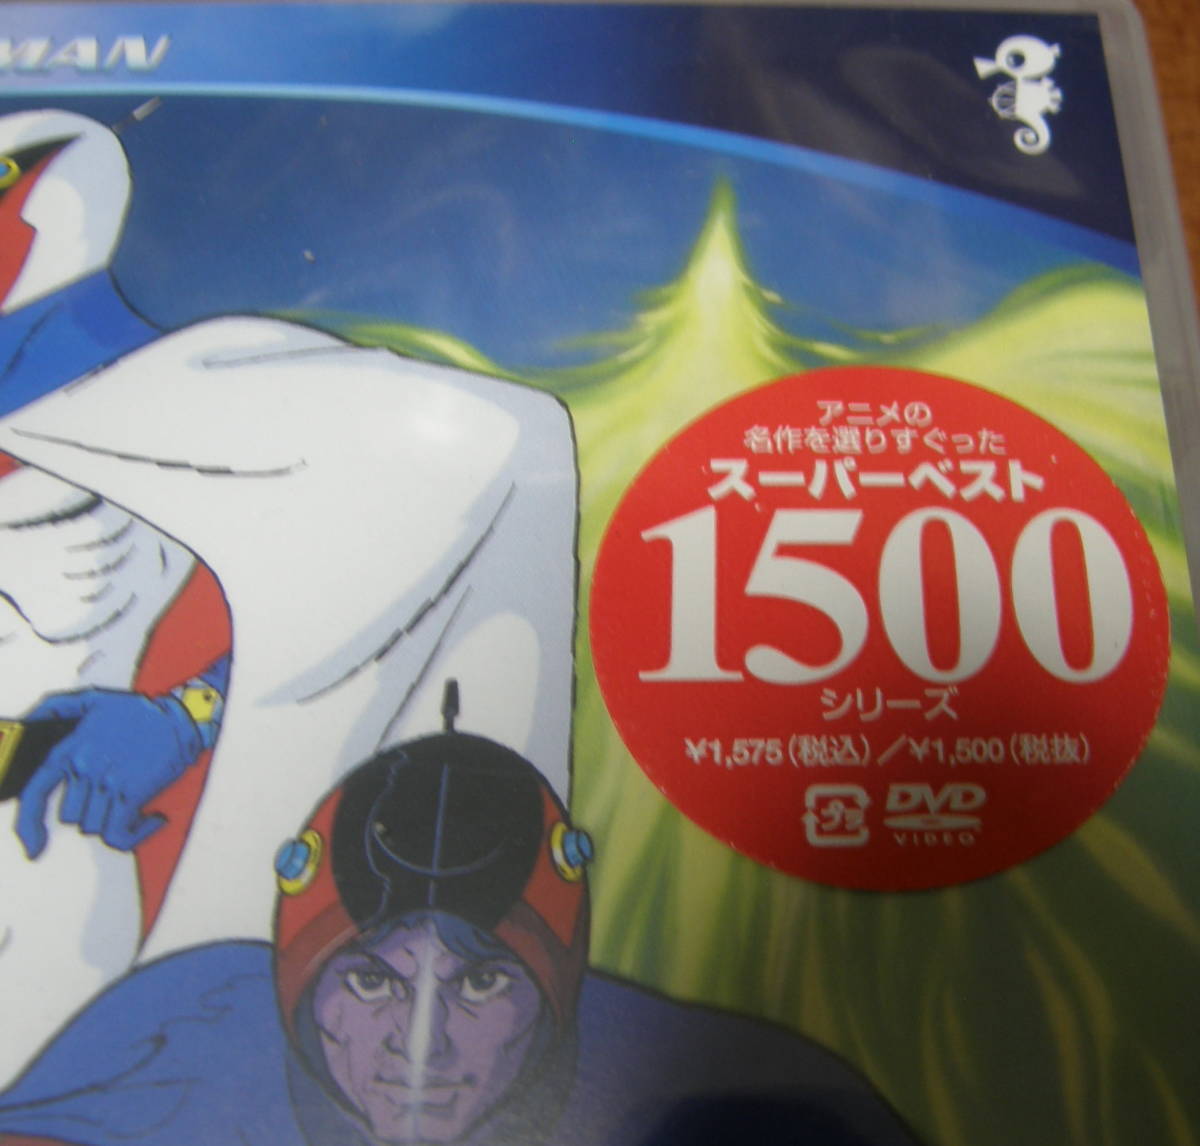 ヤフオク 新品 Dvd スーパーベスト1500 科学忍者隊 ガッ